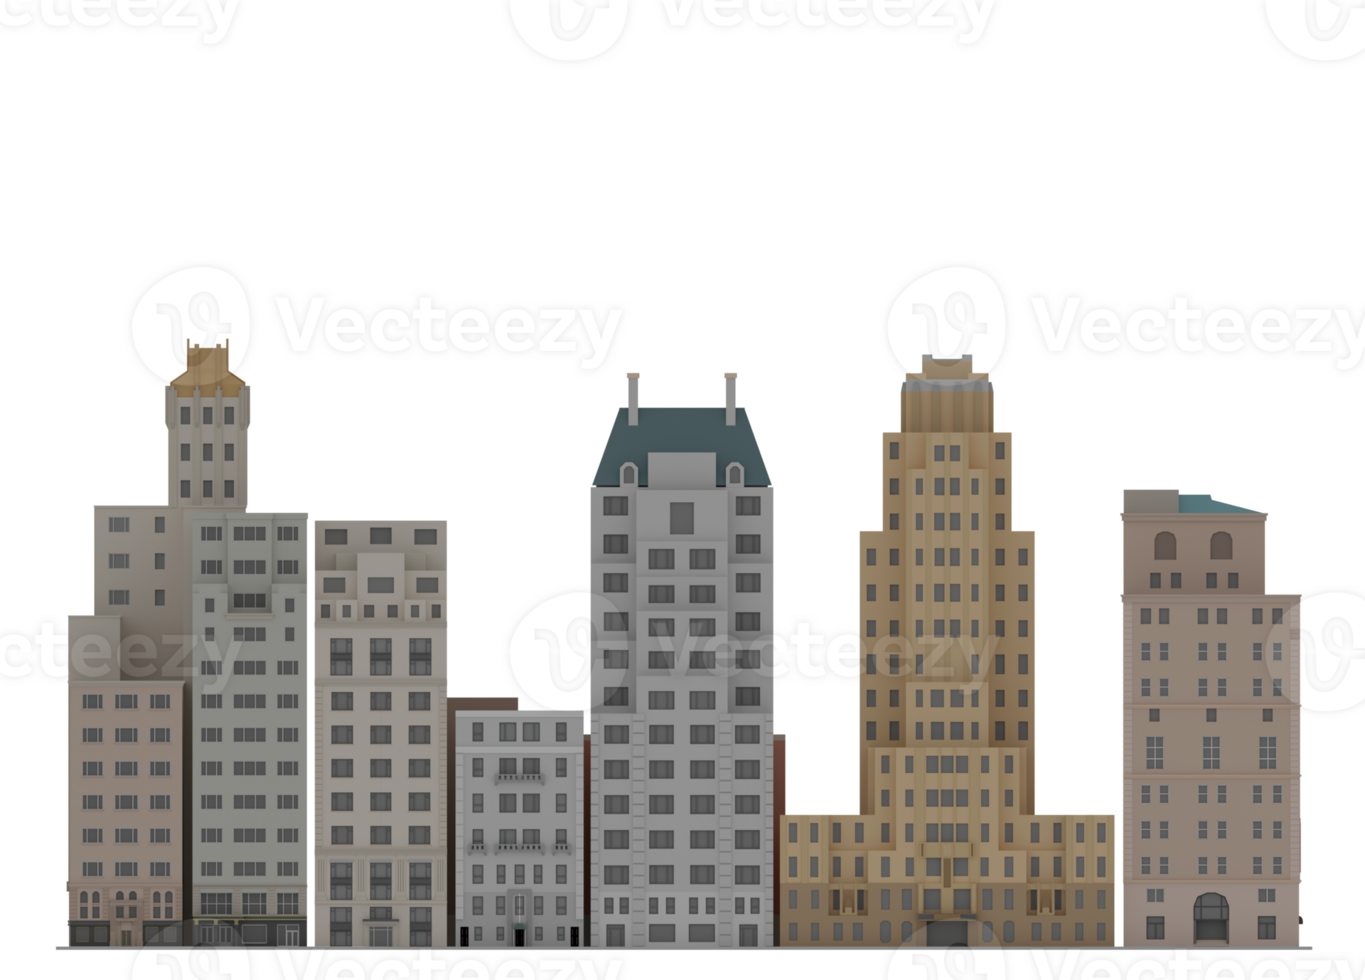 3d ilustração desenho animado cidade escapar construção arranha-céu nyc png